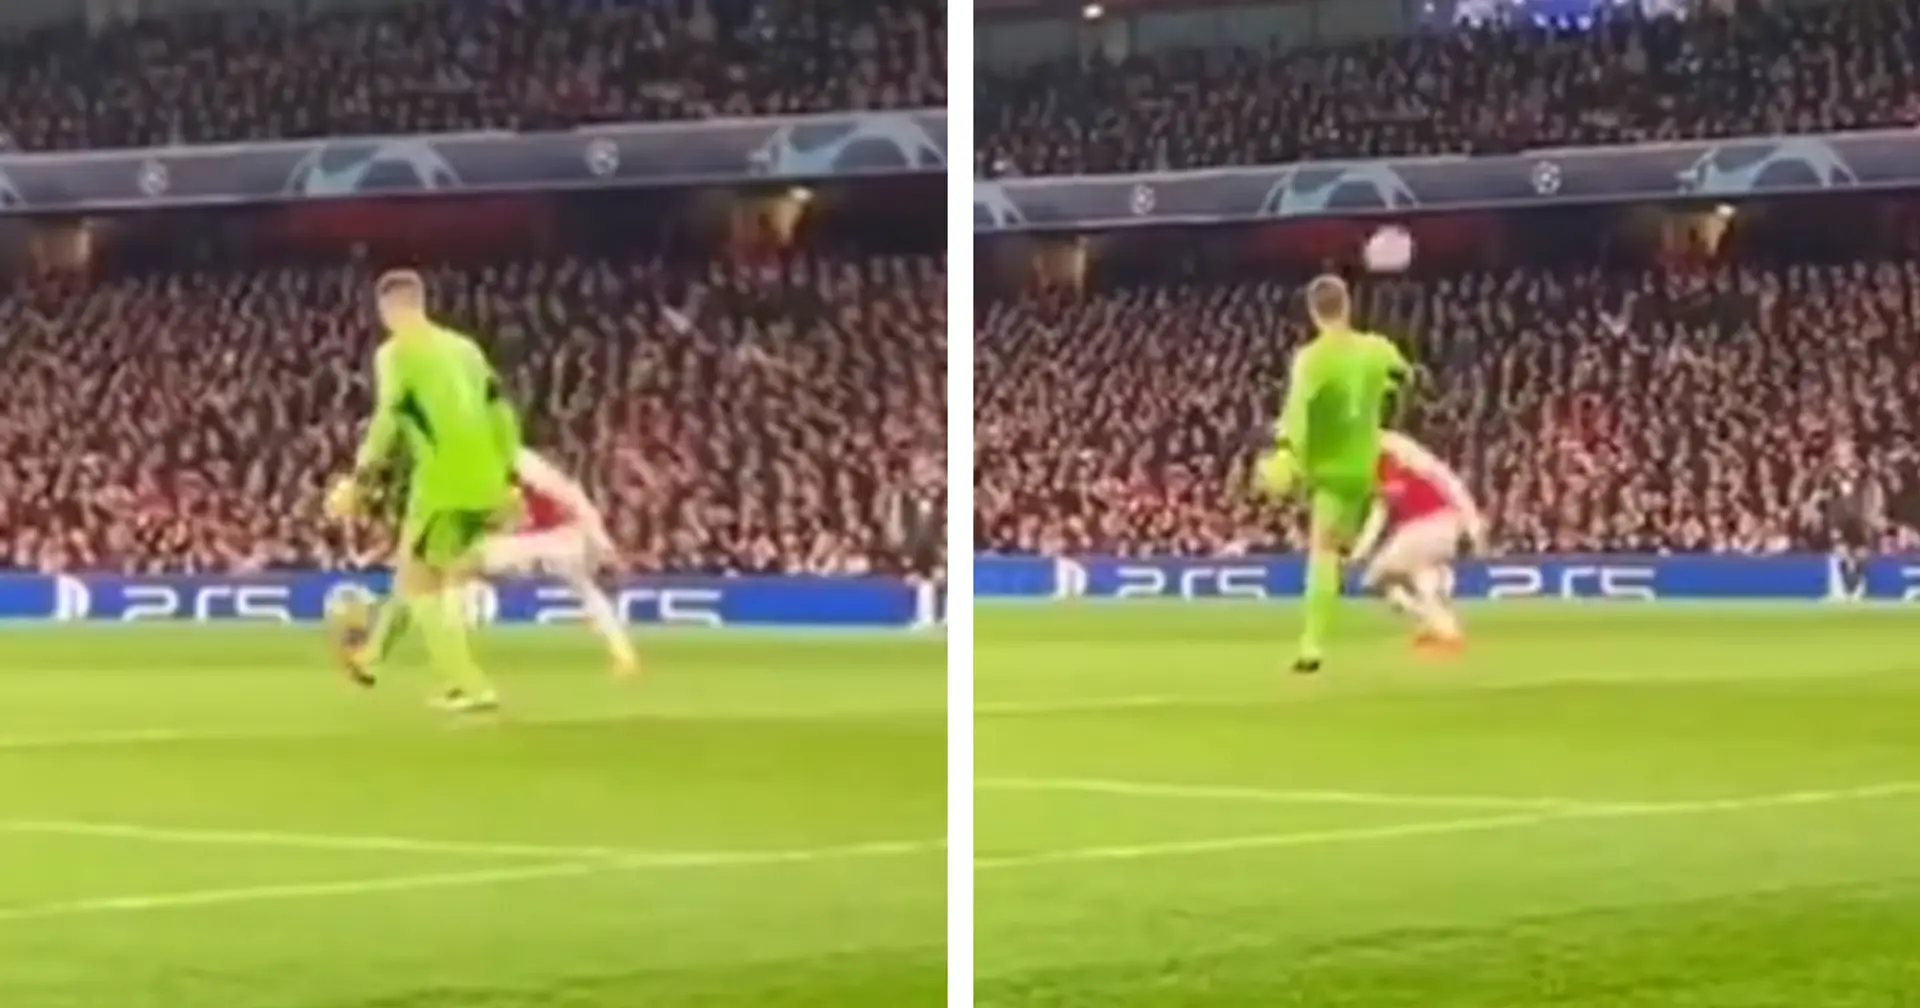 "Einfach geisteskrank": Neuer jongliert den Ball während des Topspiels gegen Arsenal - die Fans sind in Ehrfurcht